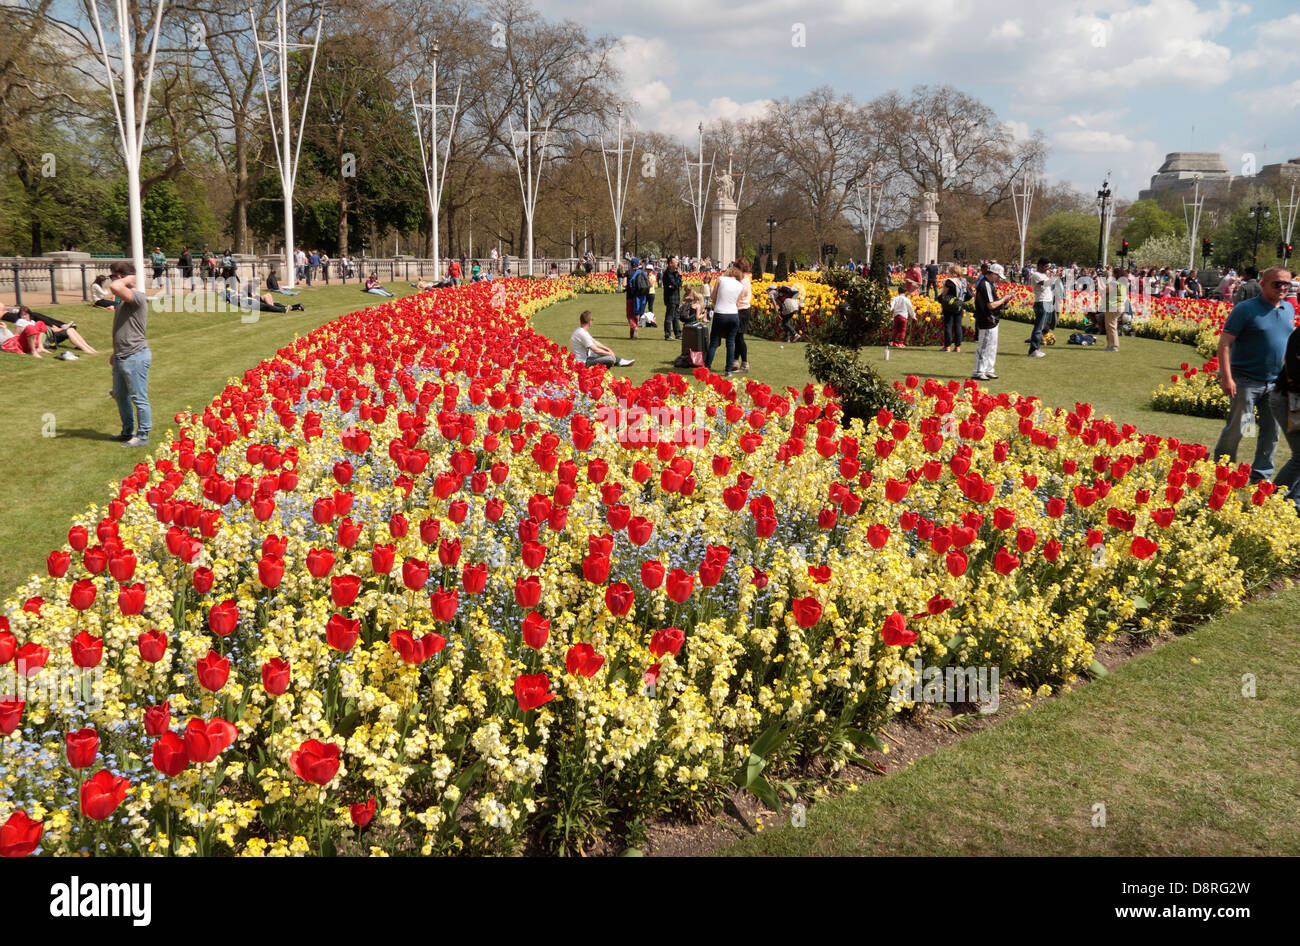 Belle floraison de fleurs de printemps dans les jardins de la Reine devant le palais de Buckingham, London, UK. Banque D'Images